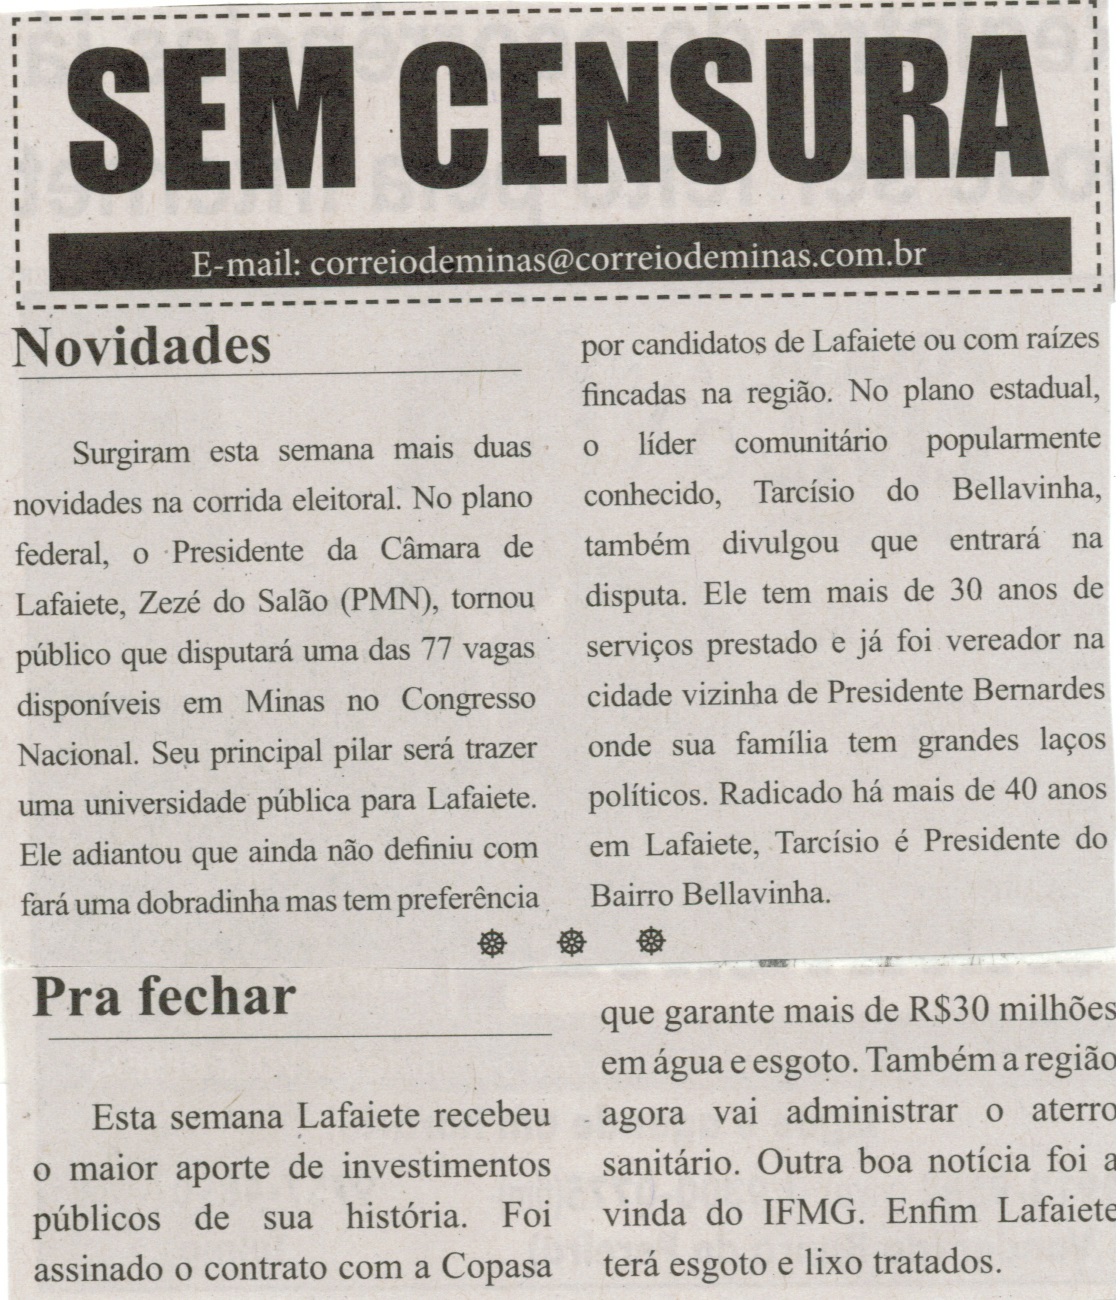 Novidades. Correio de Minas, Conselheiro Lafaiete, 05 jul 2014, Sem Censura, p. 3.